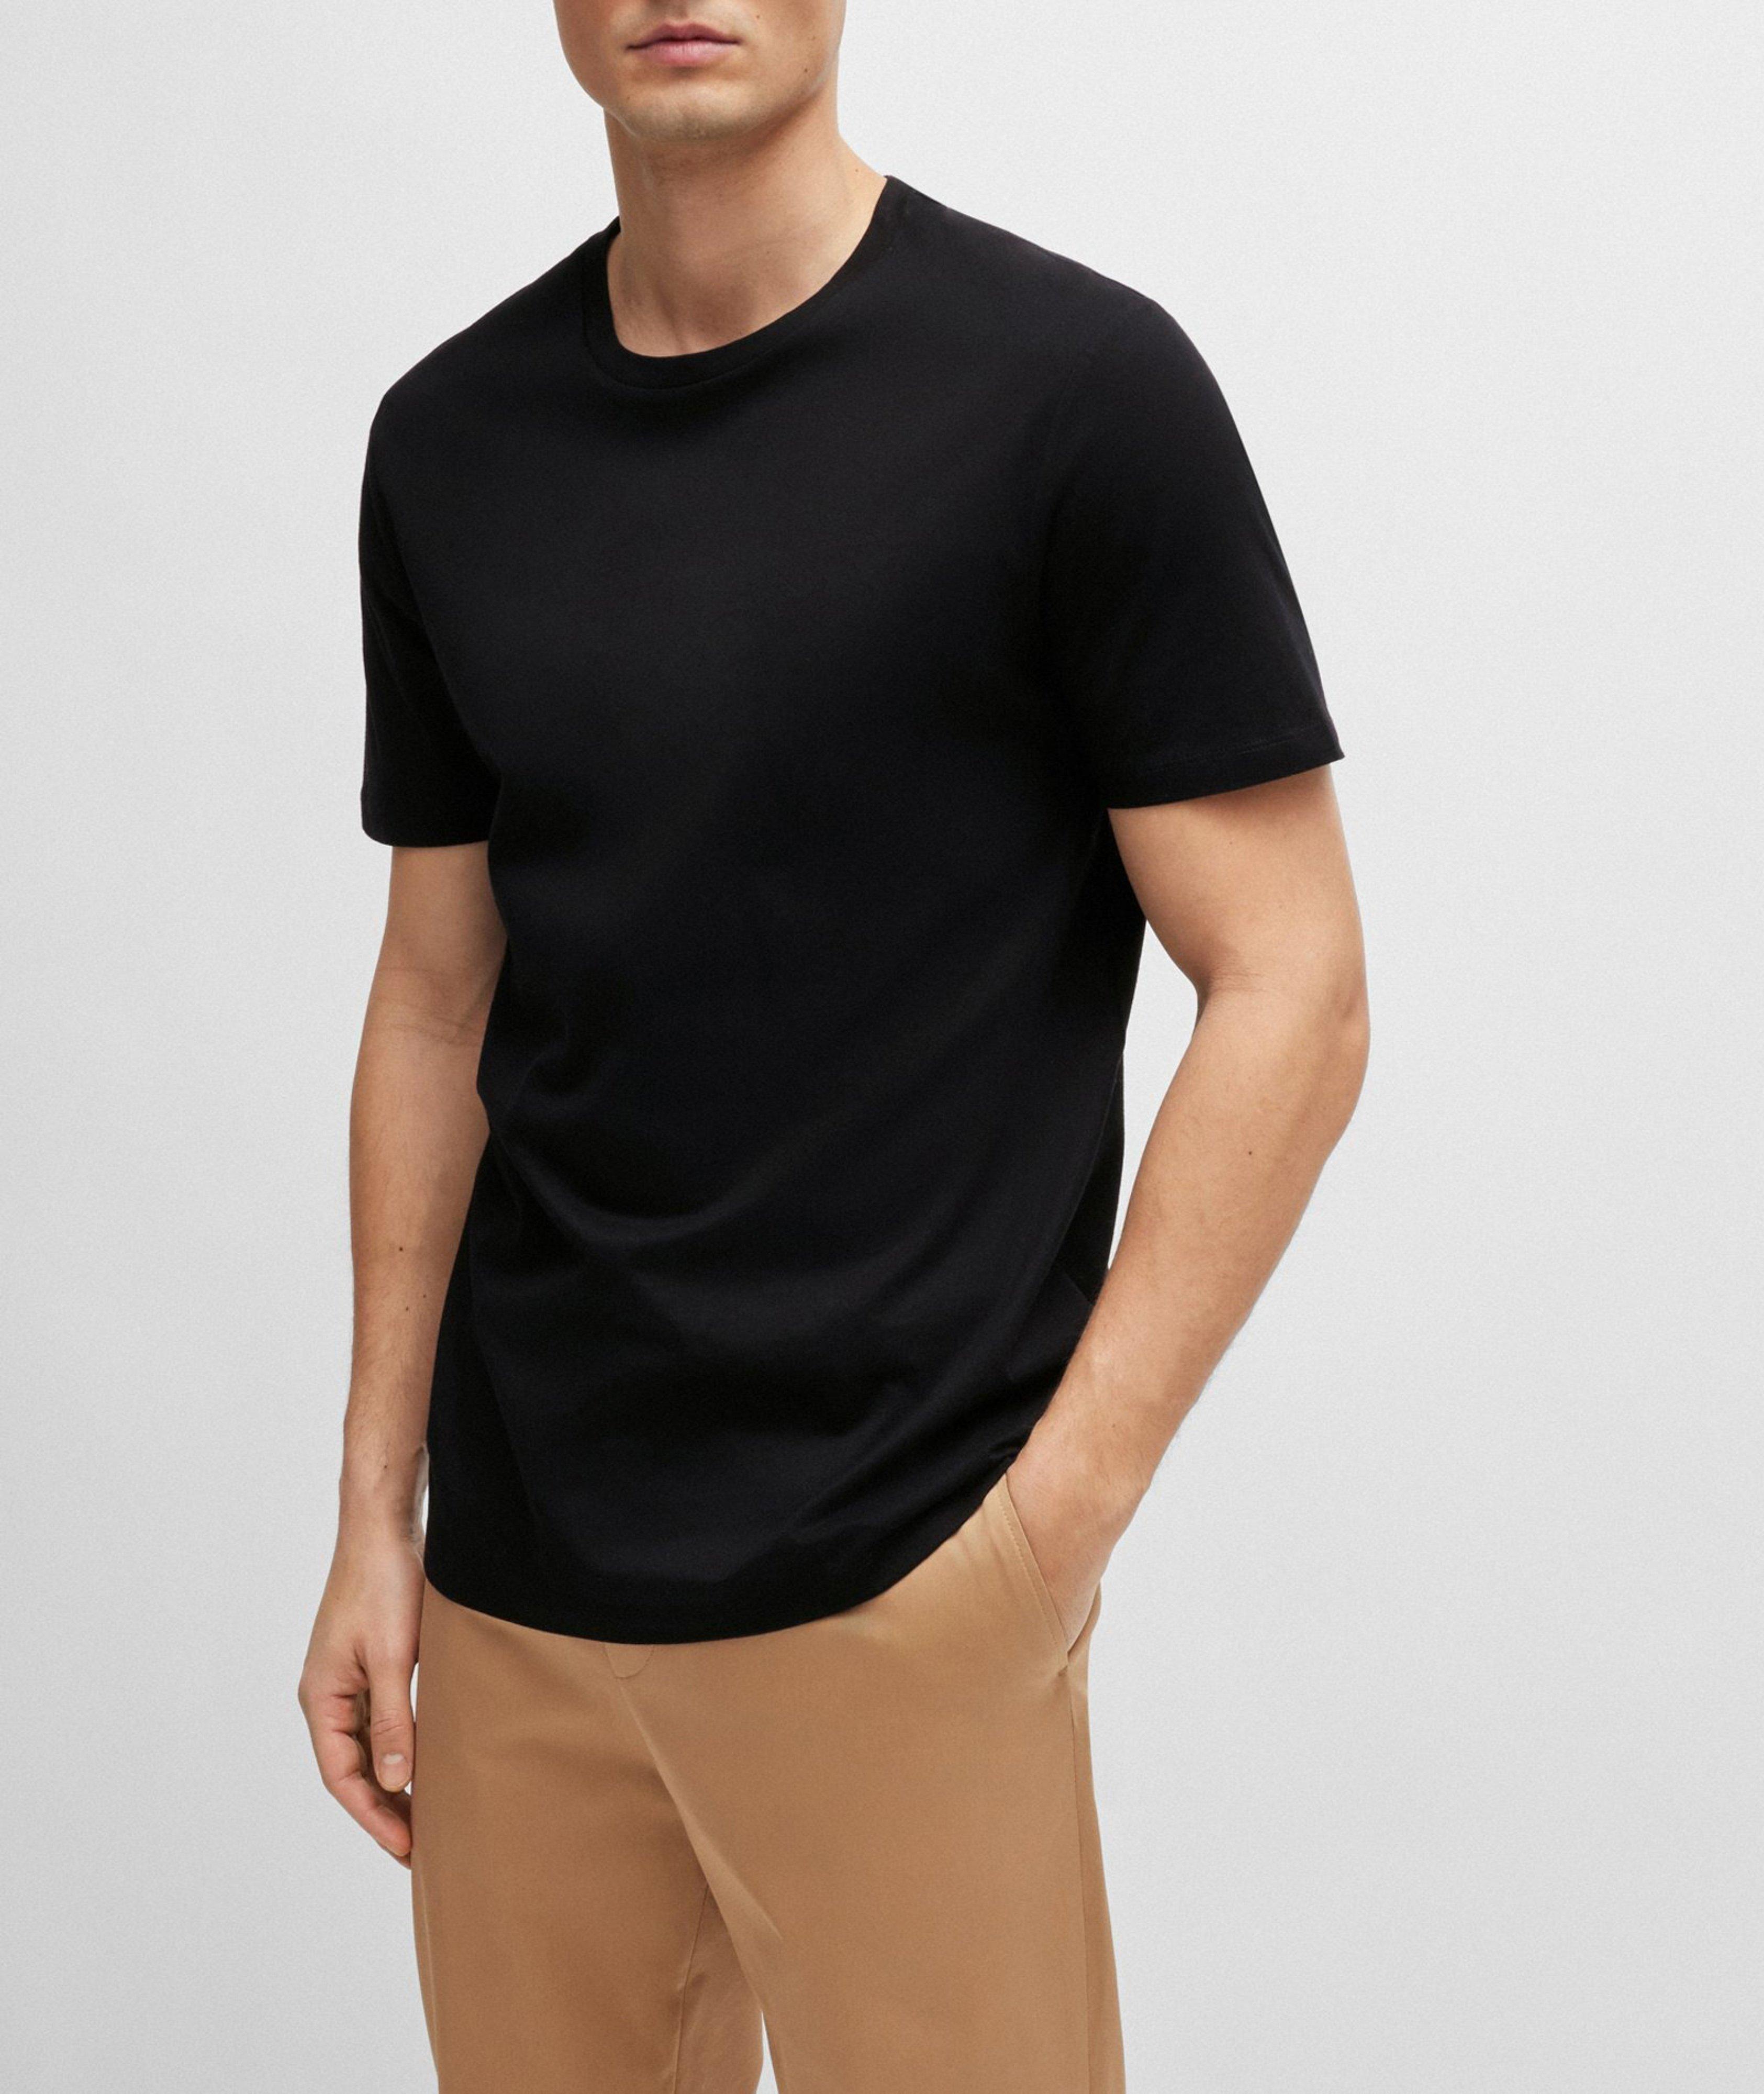 Tessler Mercerised Cotton Jersey T-Shirt image 1